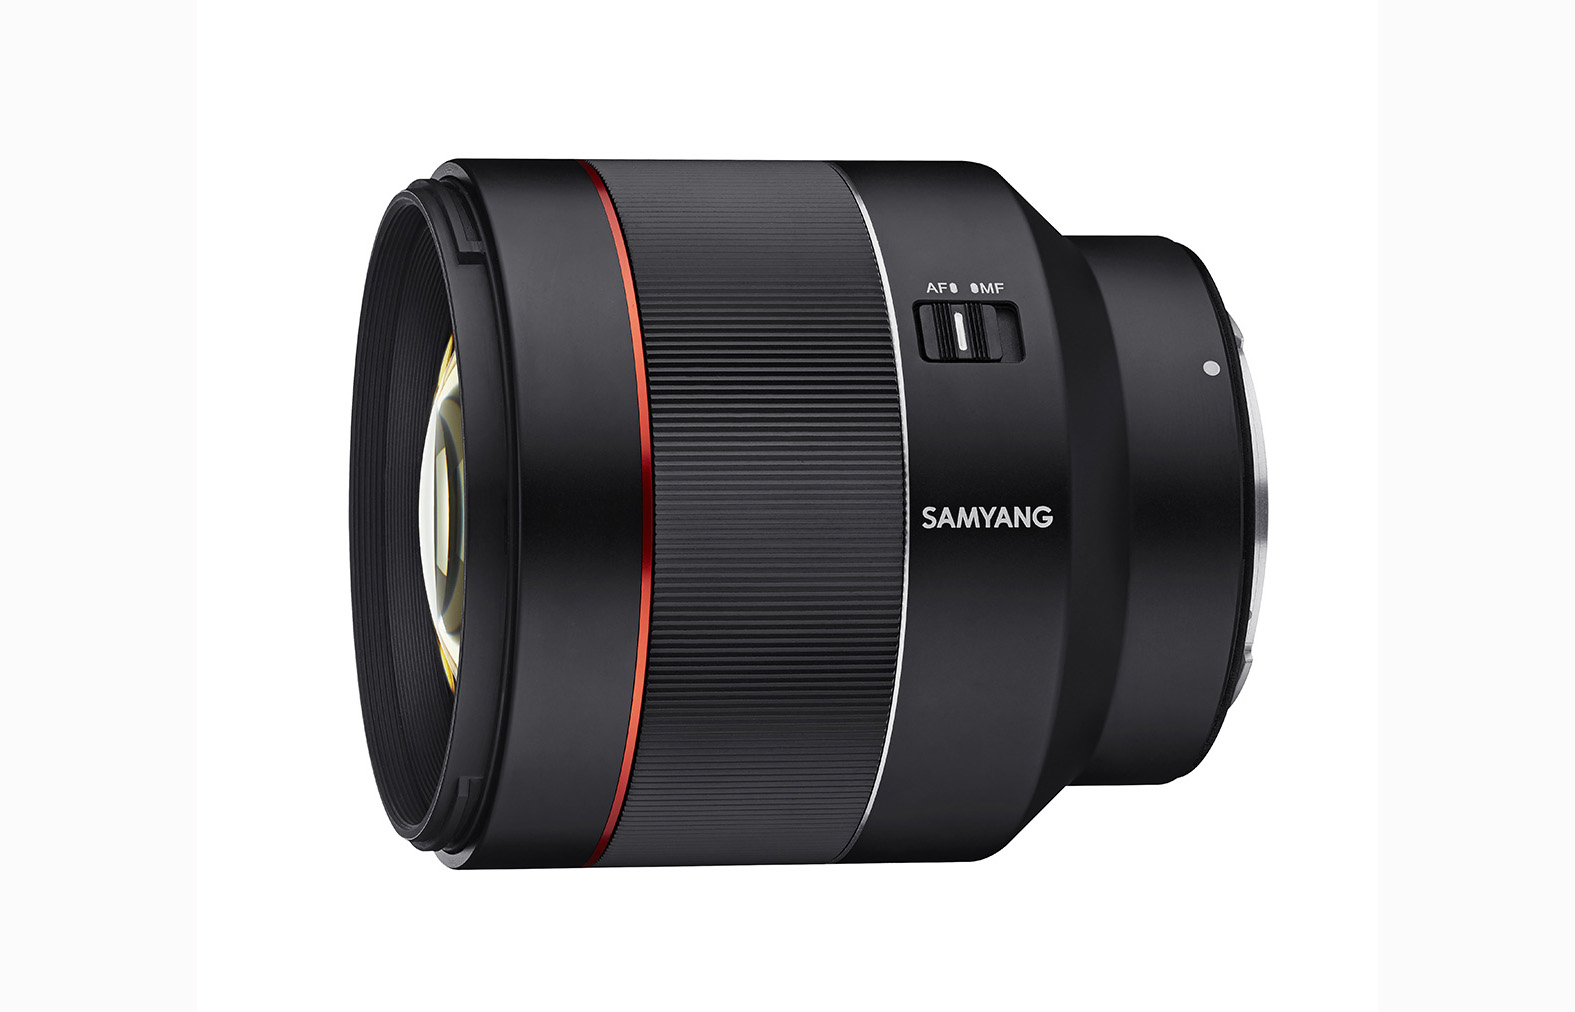 Das Samyang AF 85mm 1.4 RF ist ein kompaktes, leichtes Portraitobjektiv für Canon EOS R und RP.